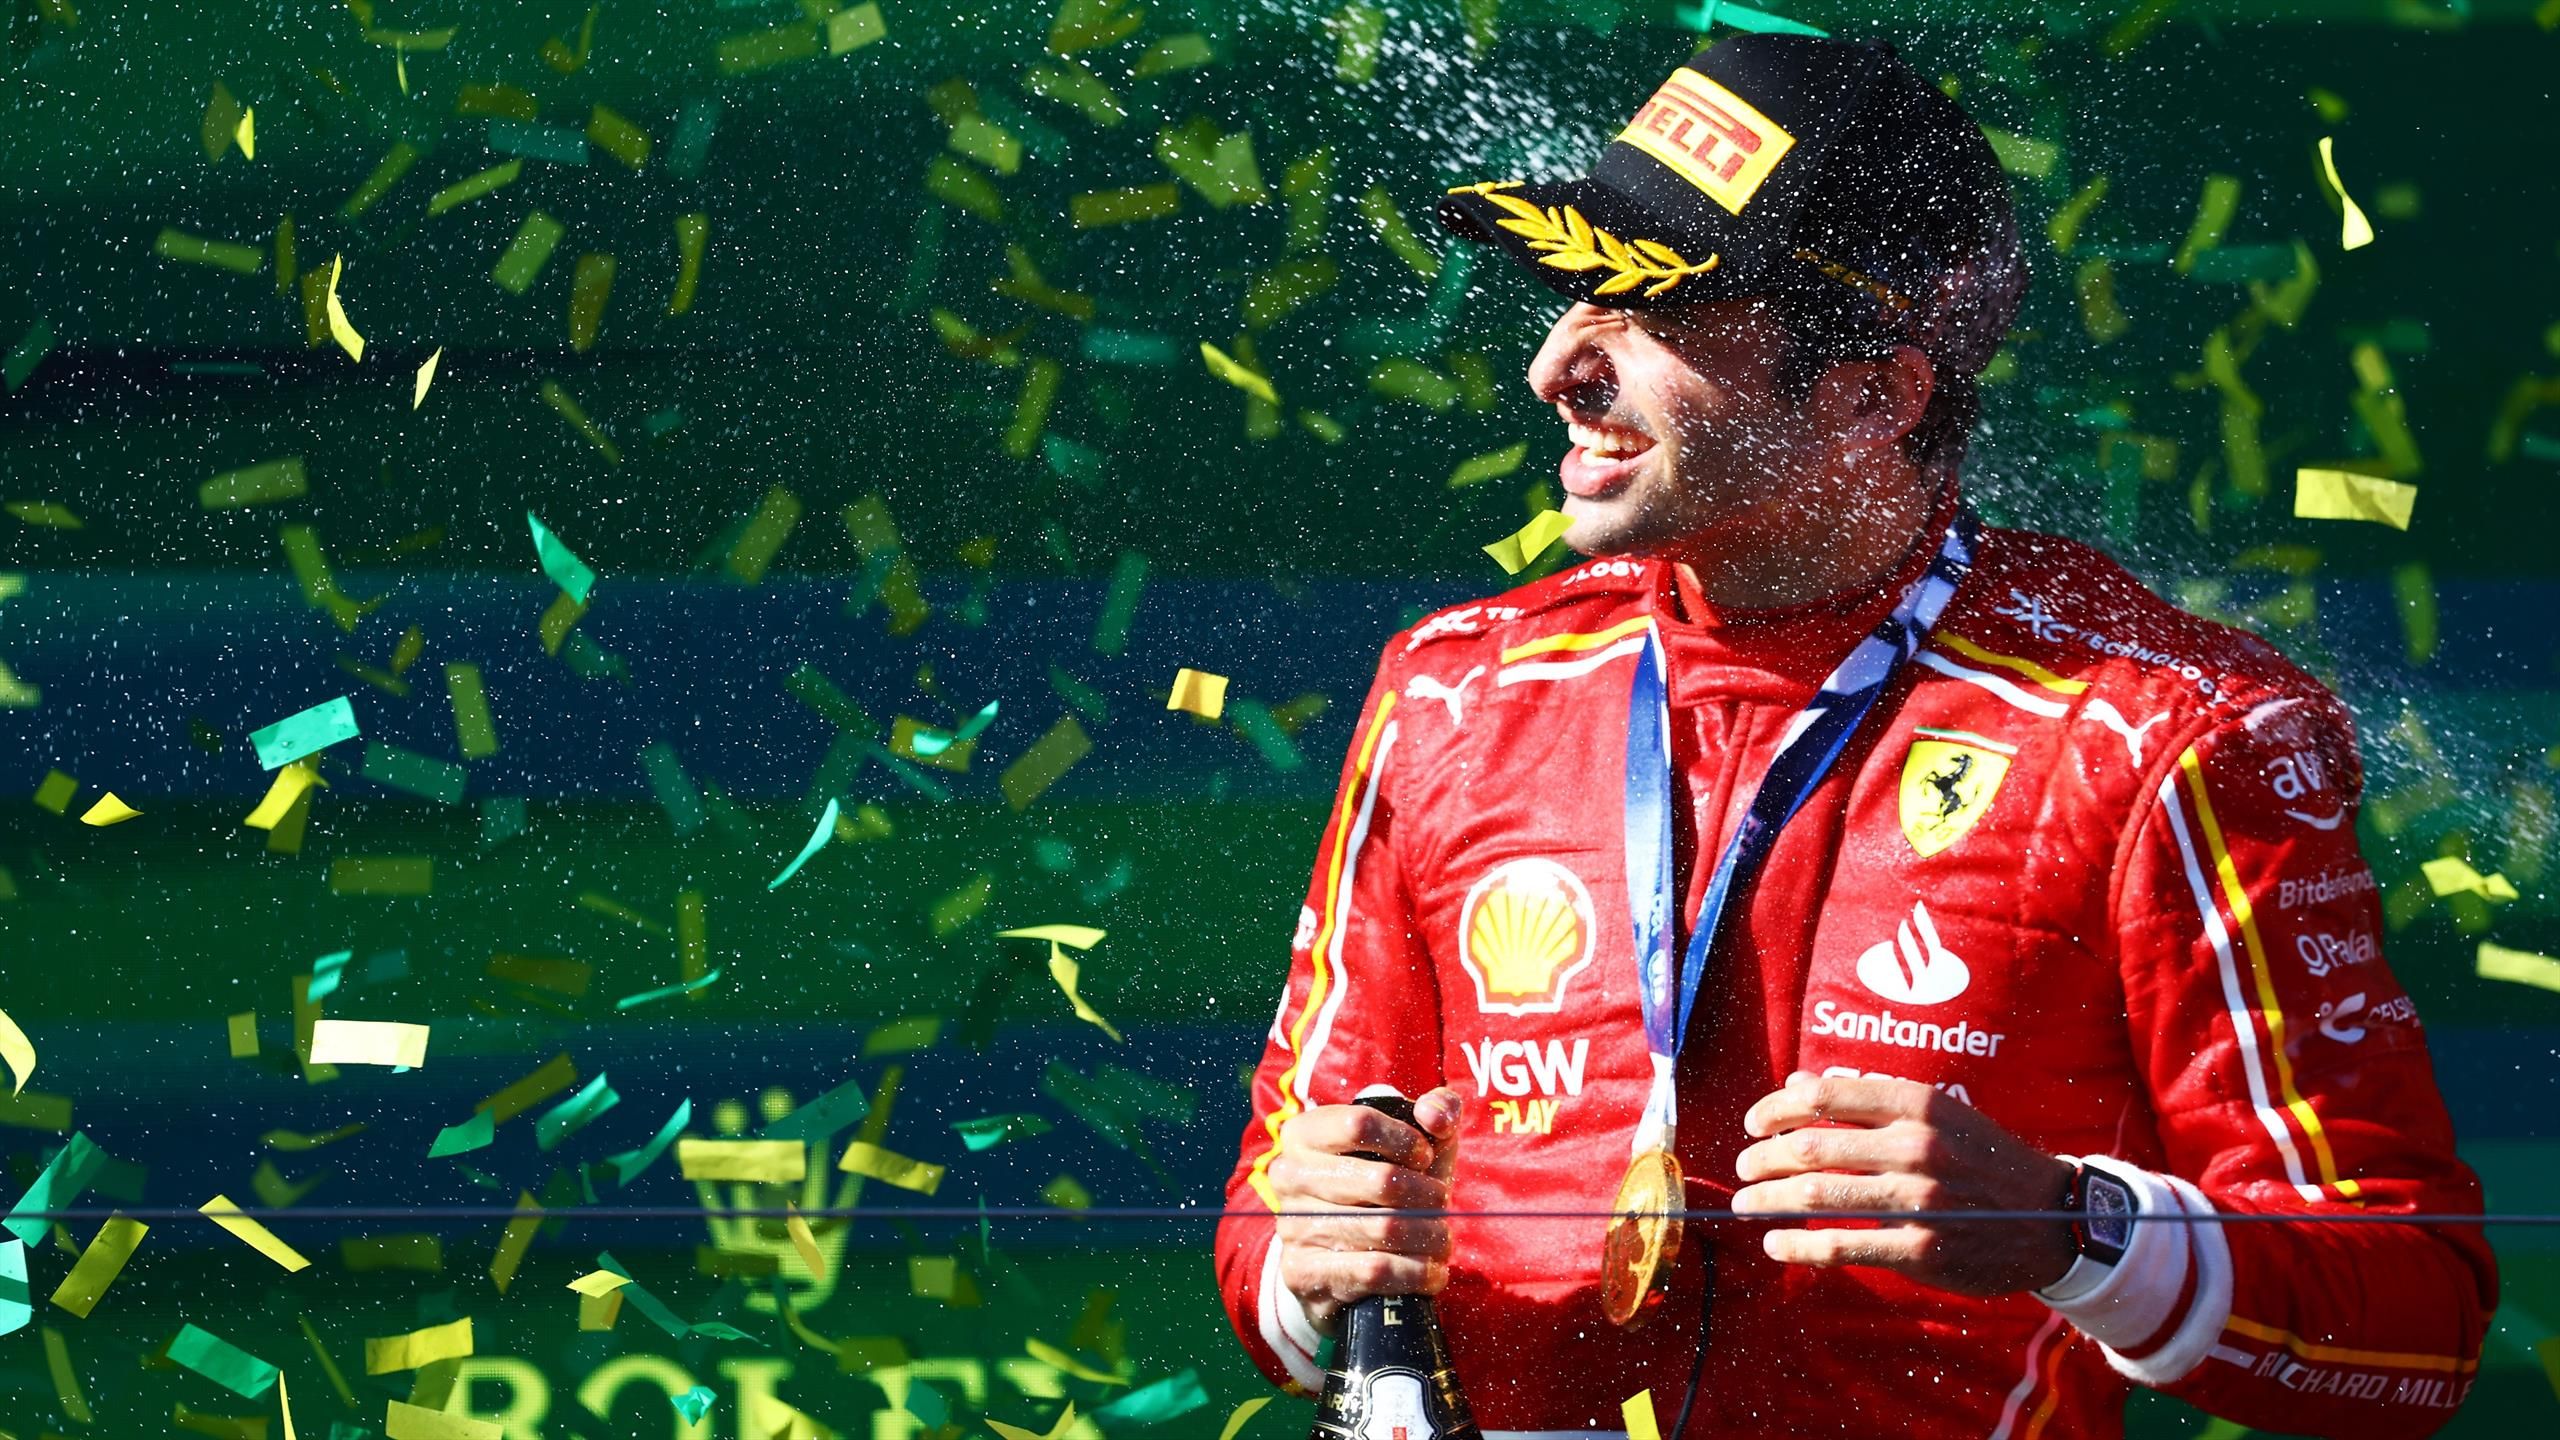 Formule 1. Carlos Sainz jr.  vainqueur du Grand Prix d’Australie